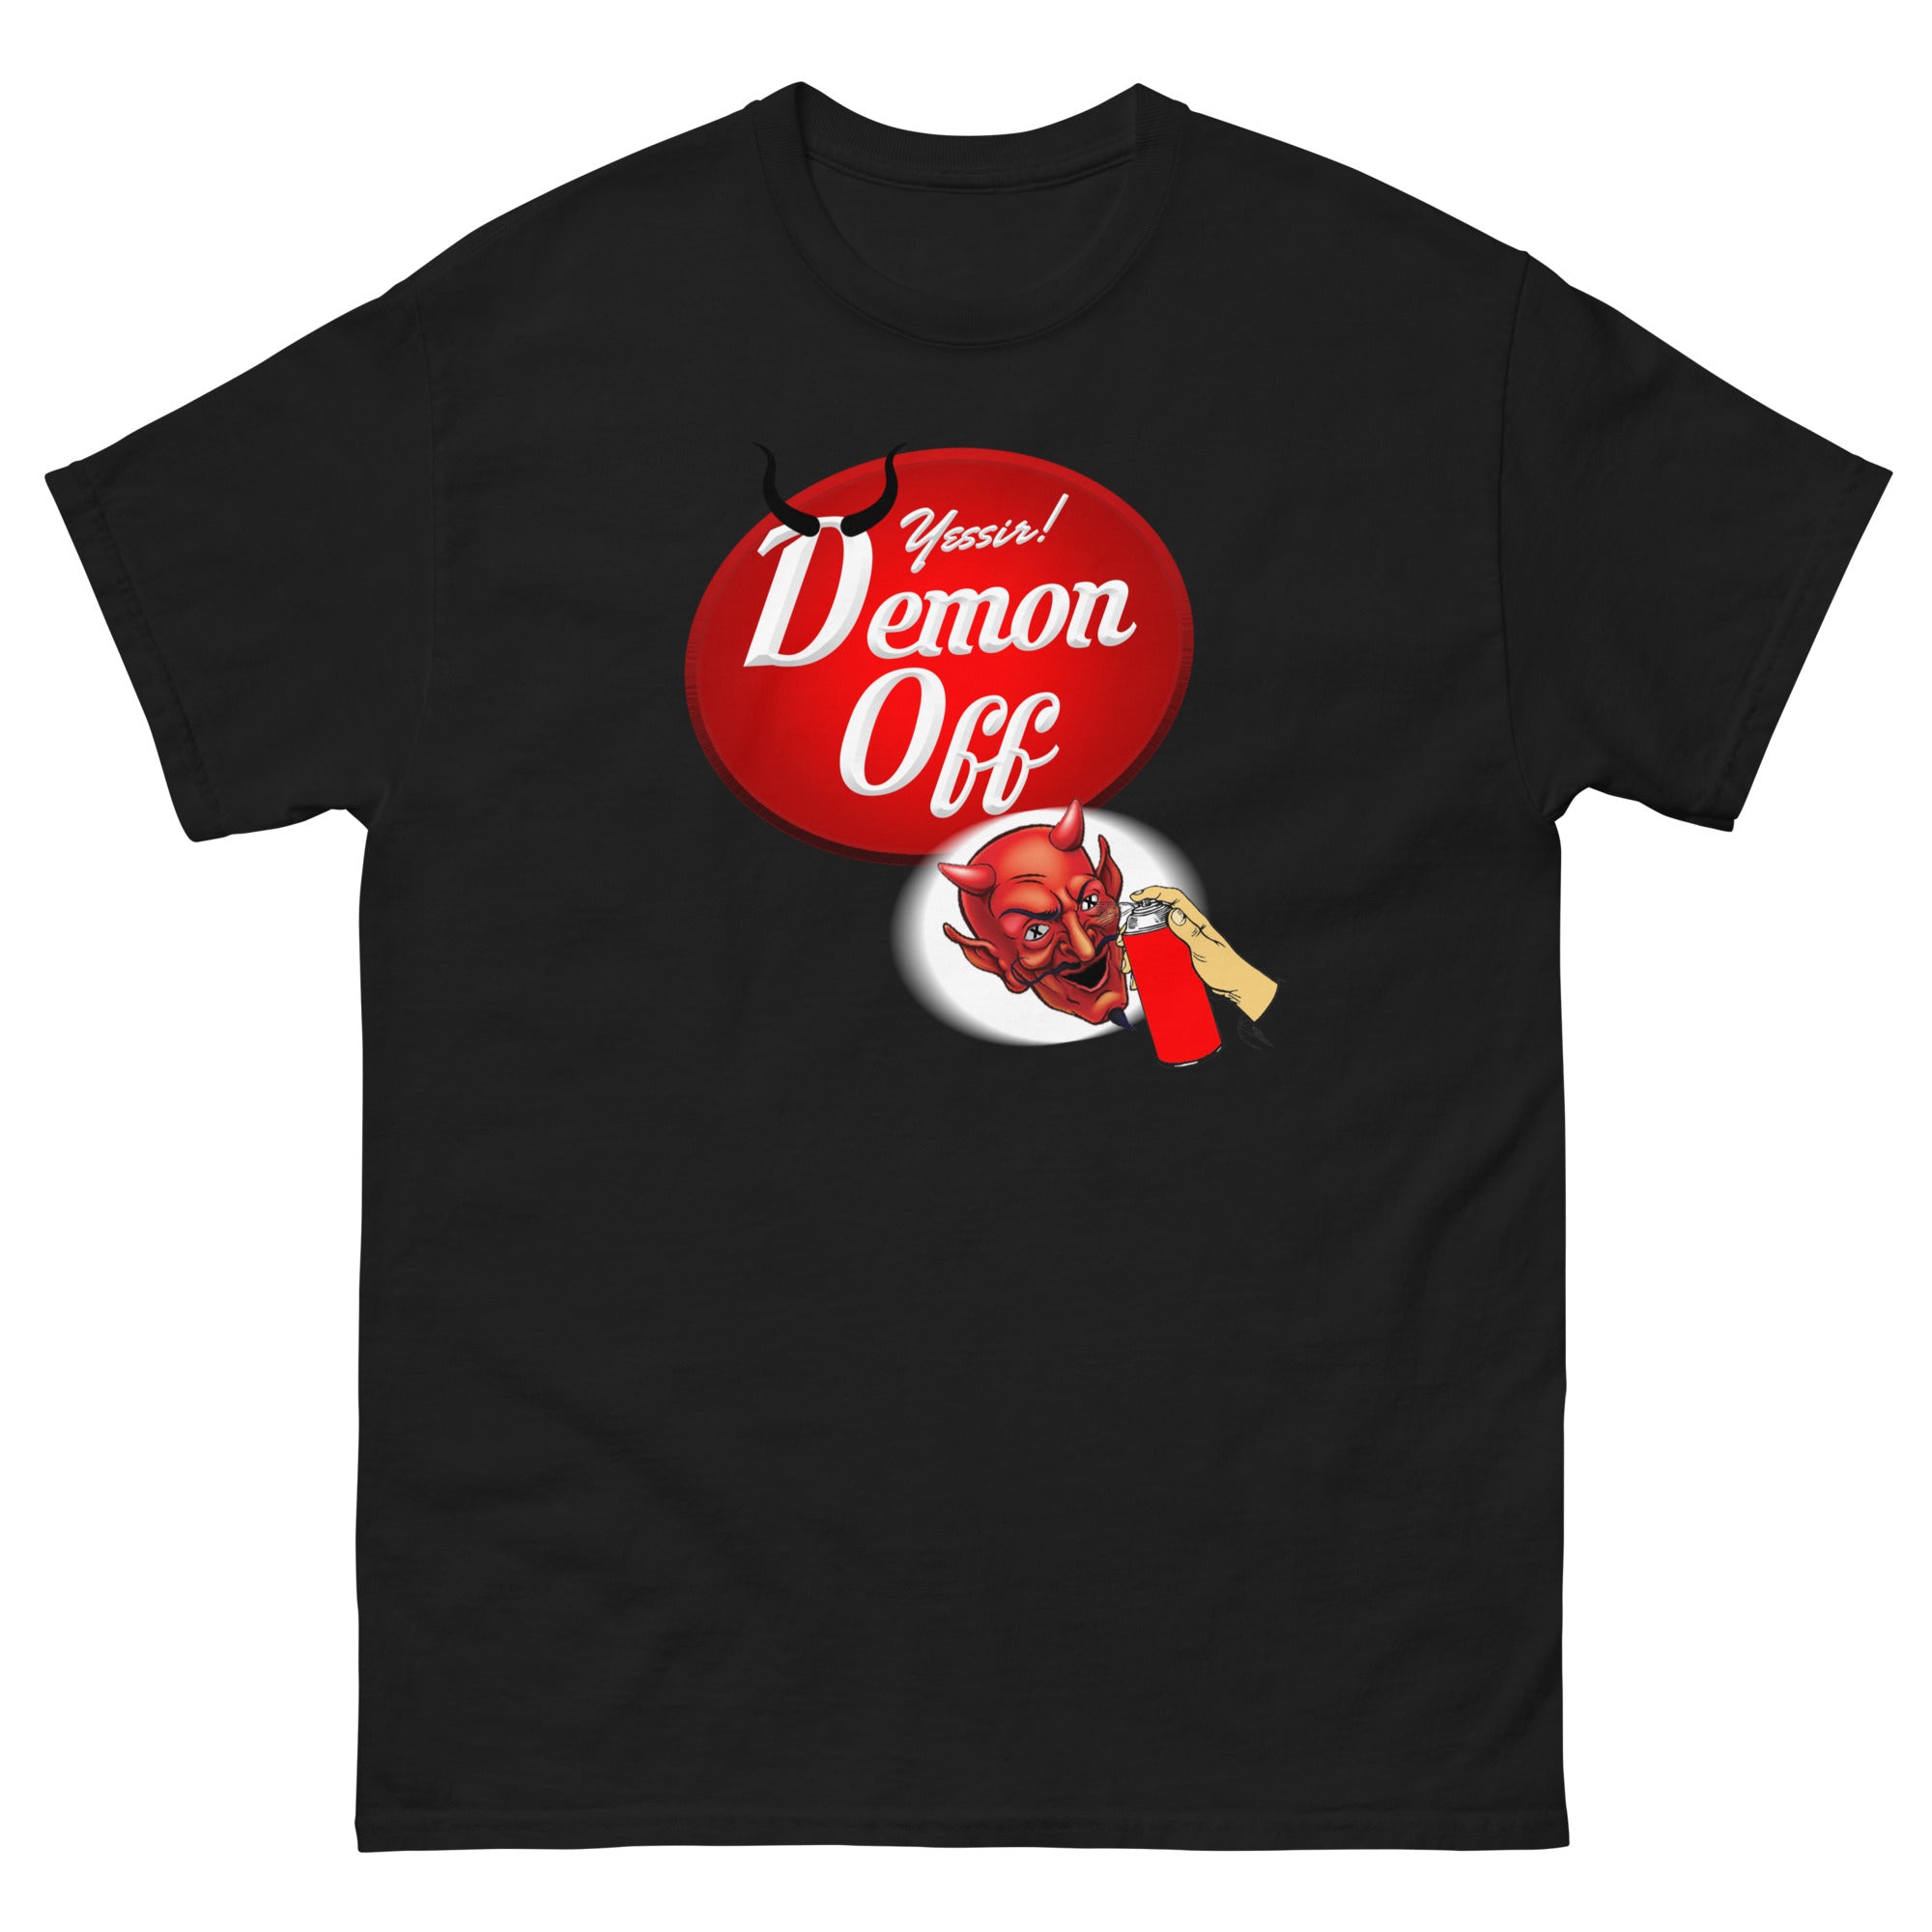 Demon Off! Shirt